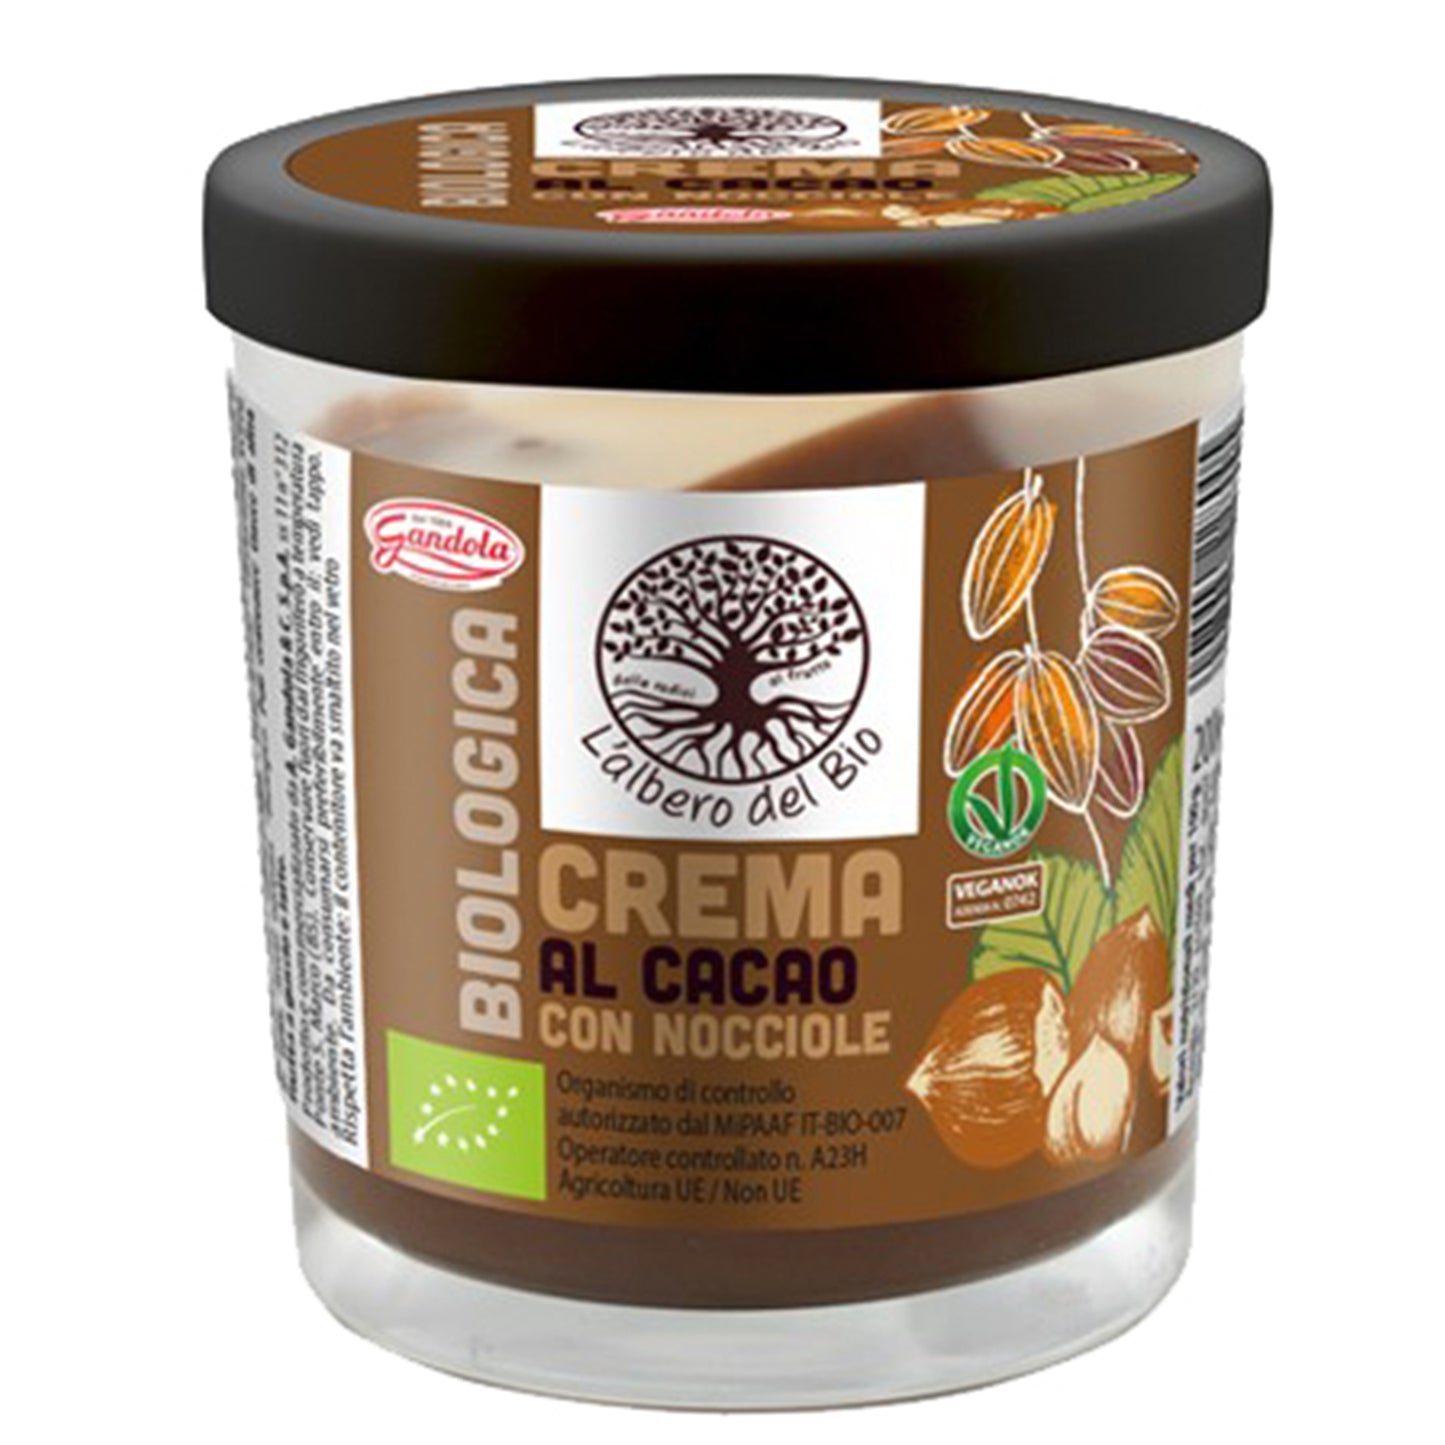 Crema Nocciola Al Cacao 200g